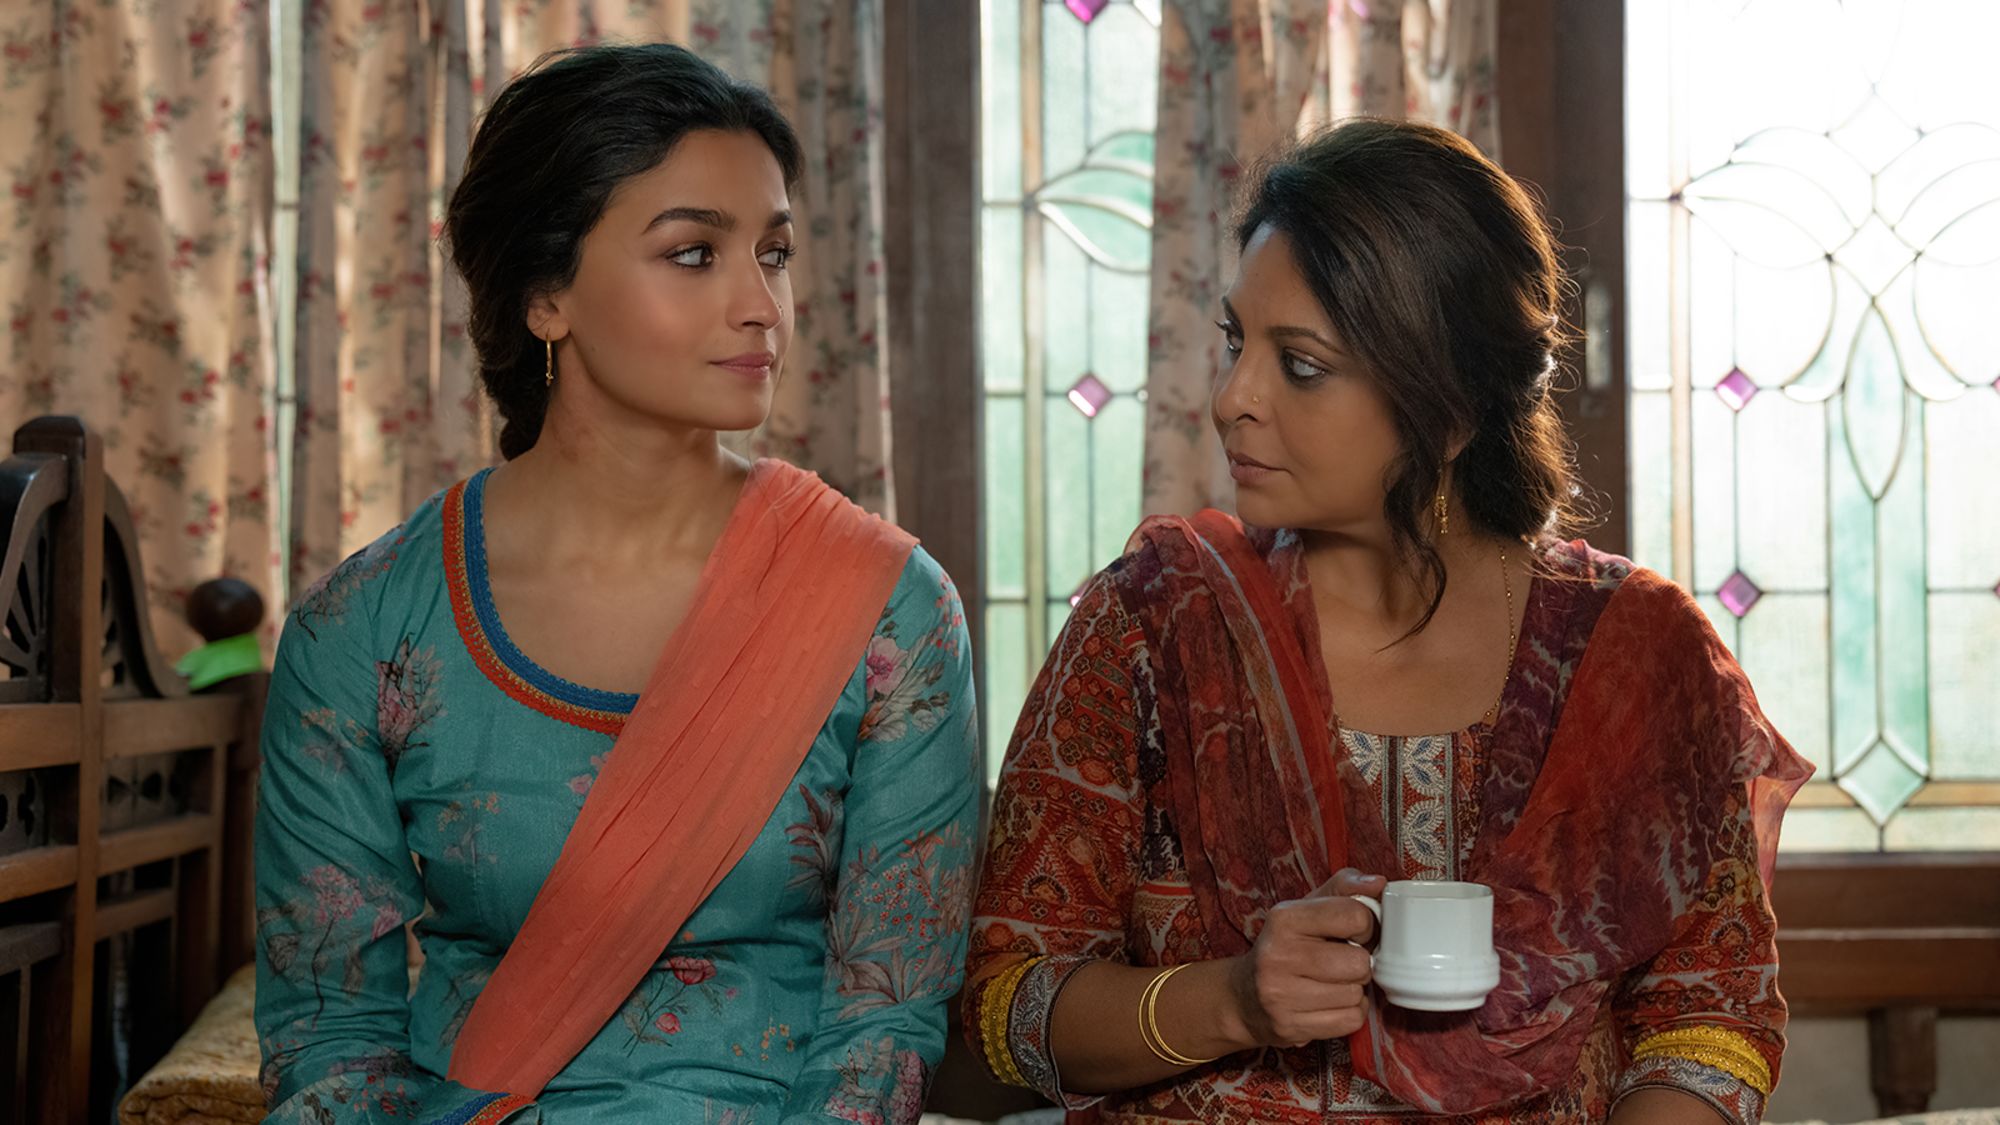 Alia Bhatt Full Open Sex - Indian star Alia Bhatt tackles domestic violence in Netflix movie  'Darlings' | CNN